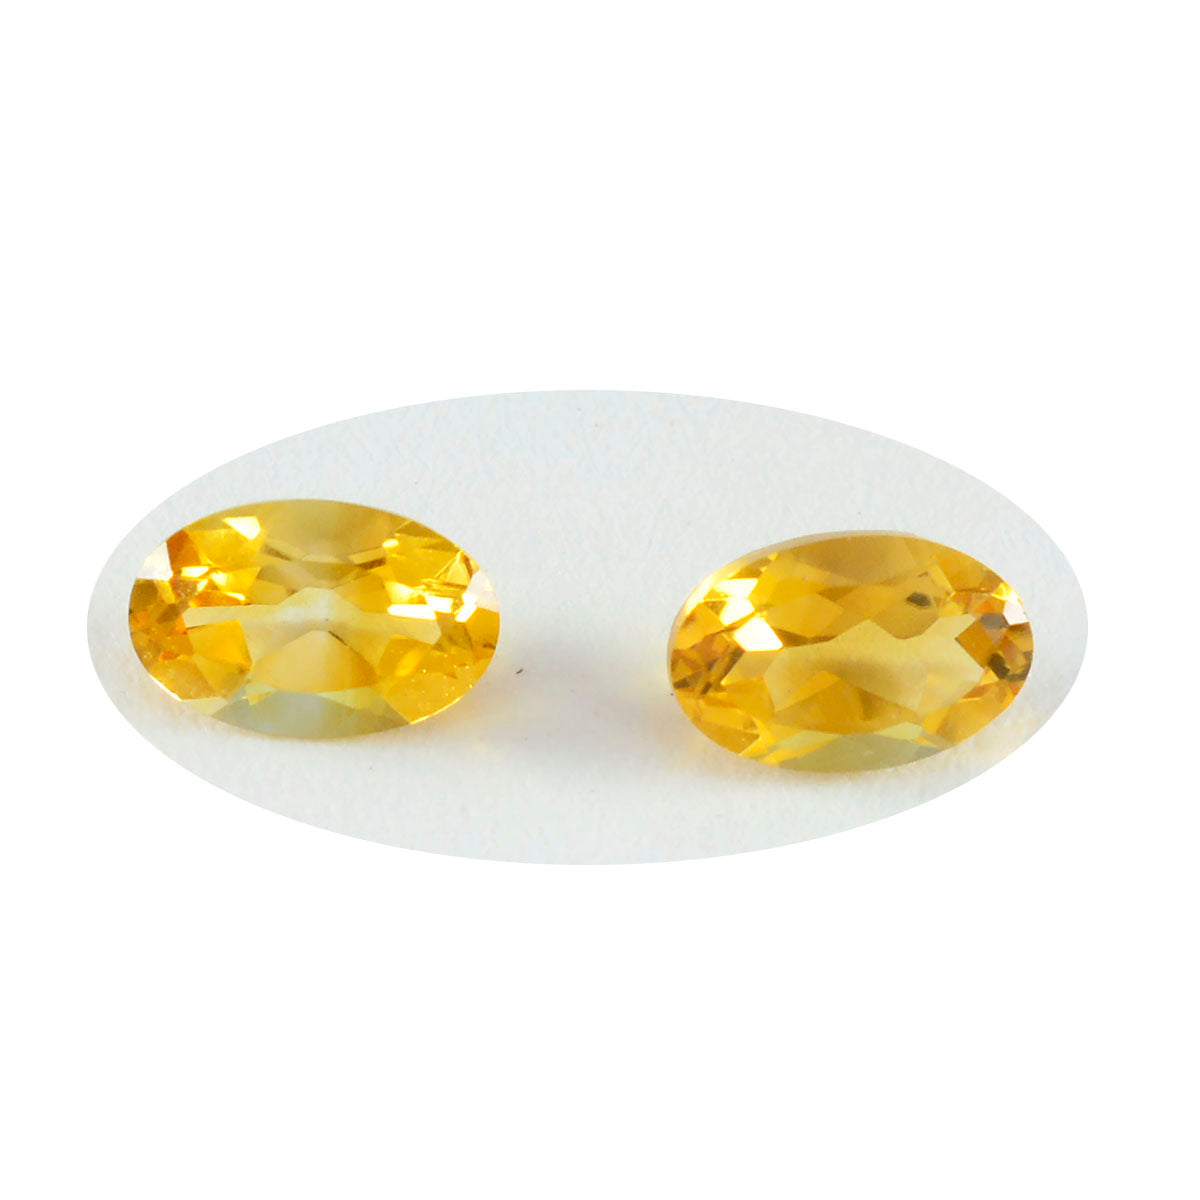 Riyogems 1PC echte gele citrien gefacetteerd 6x8 mm ovale vorm aantrekkelijke kwaliteit losse steen